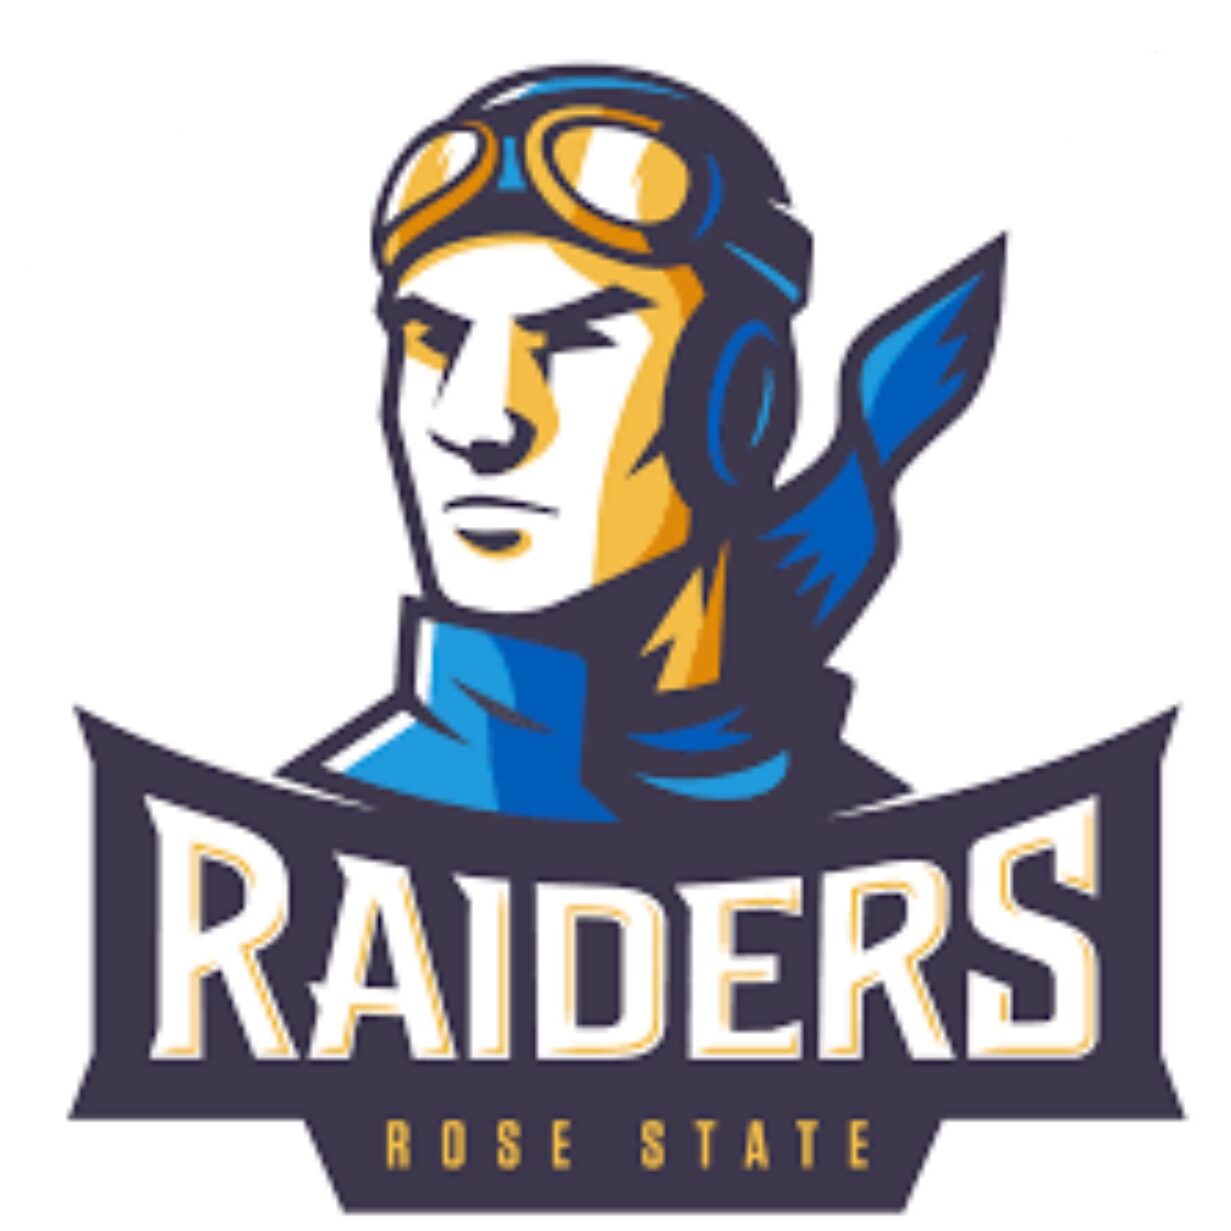 Rose State logo